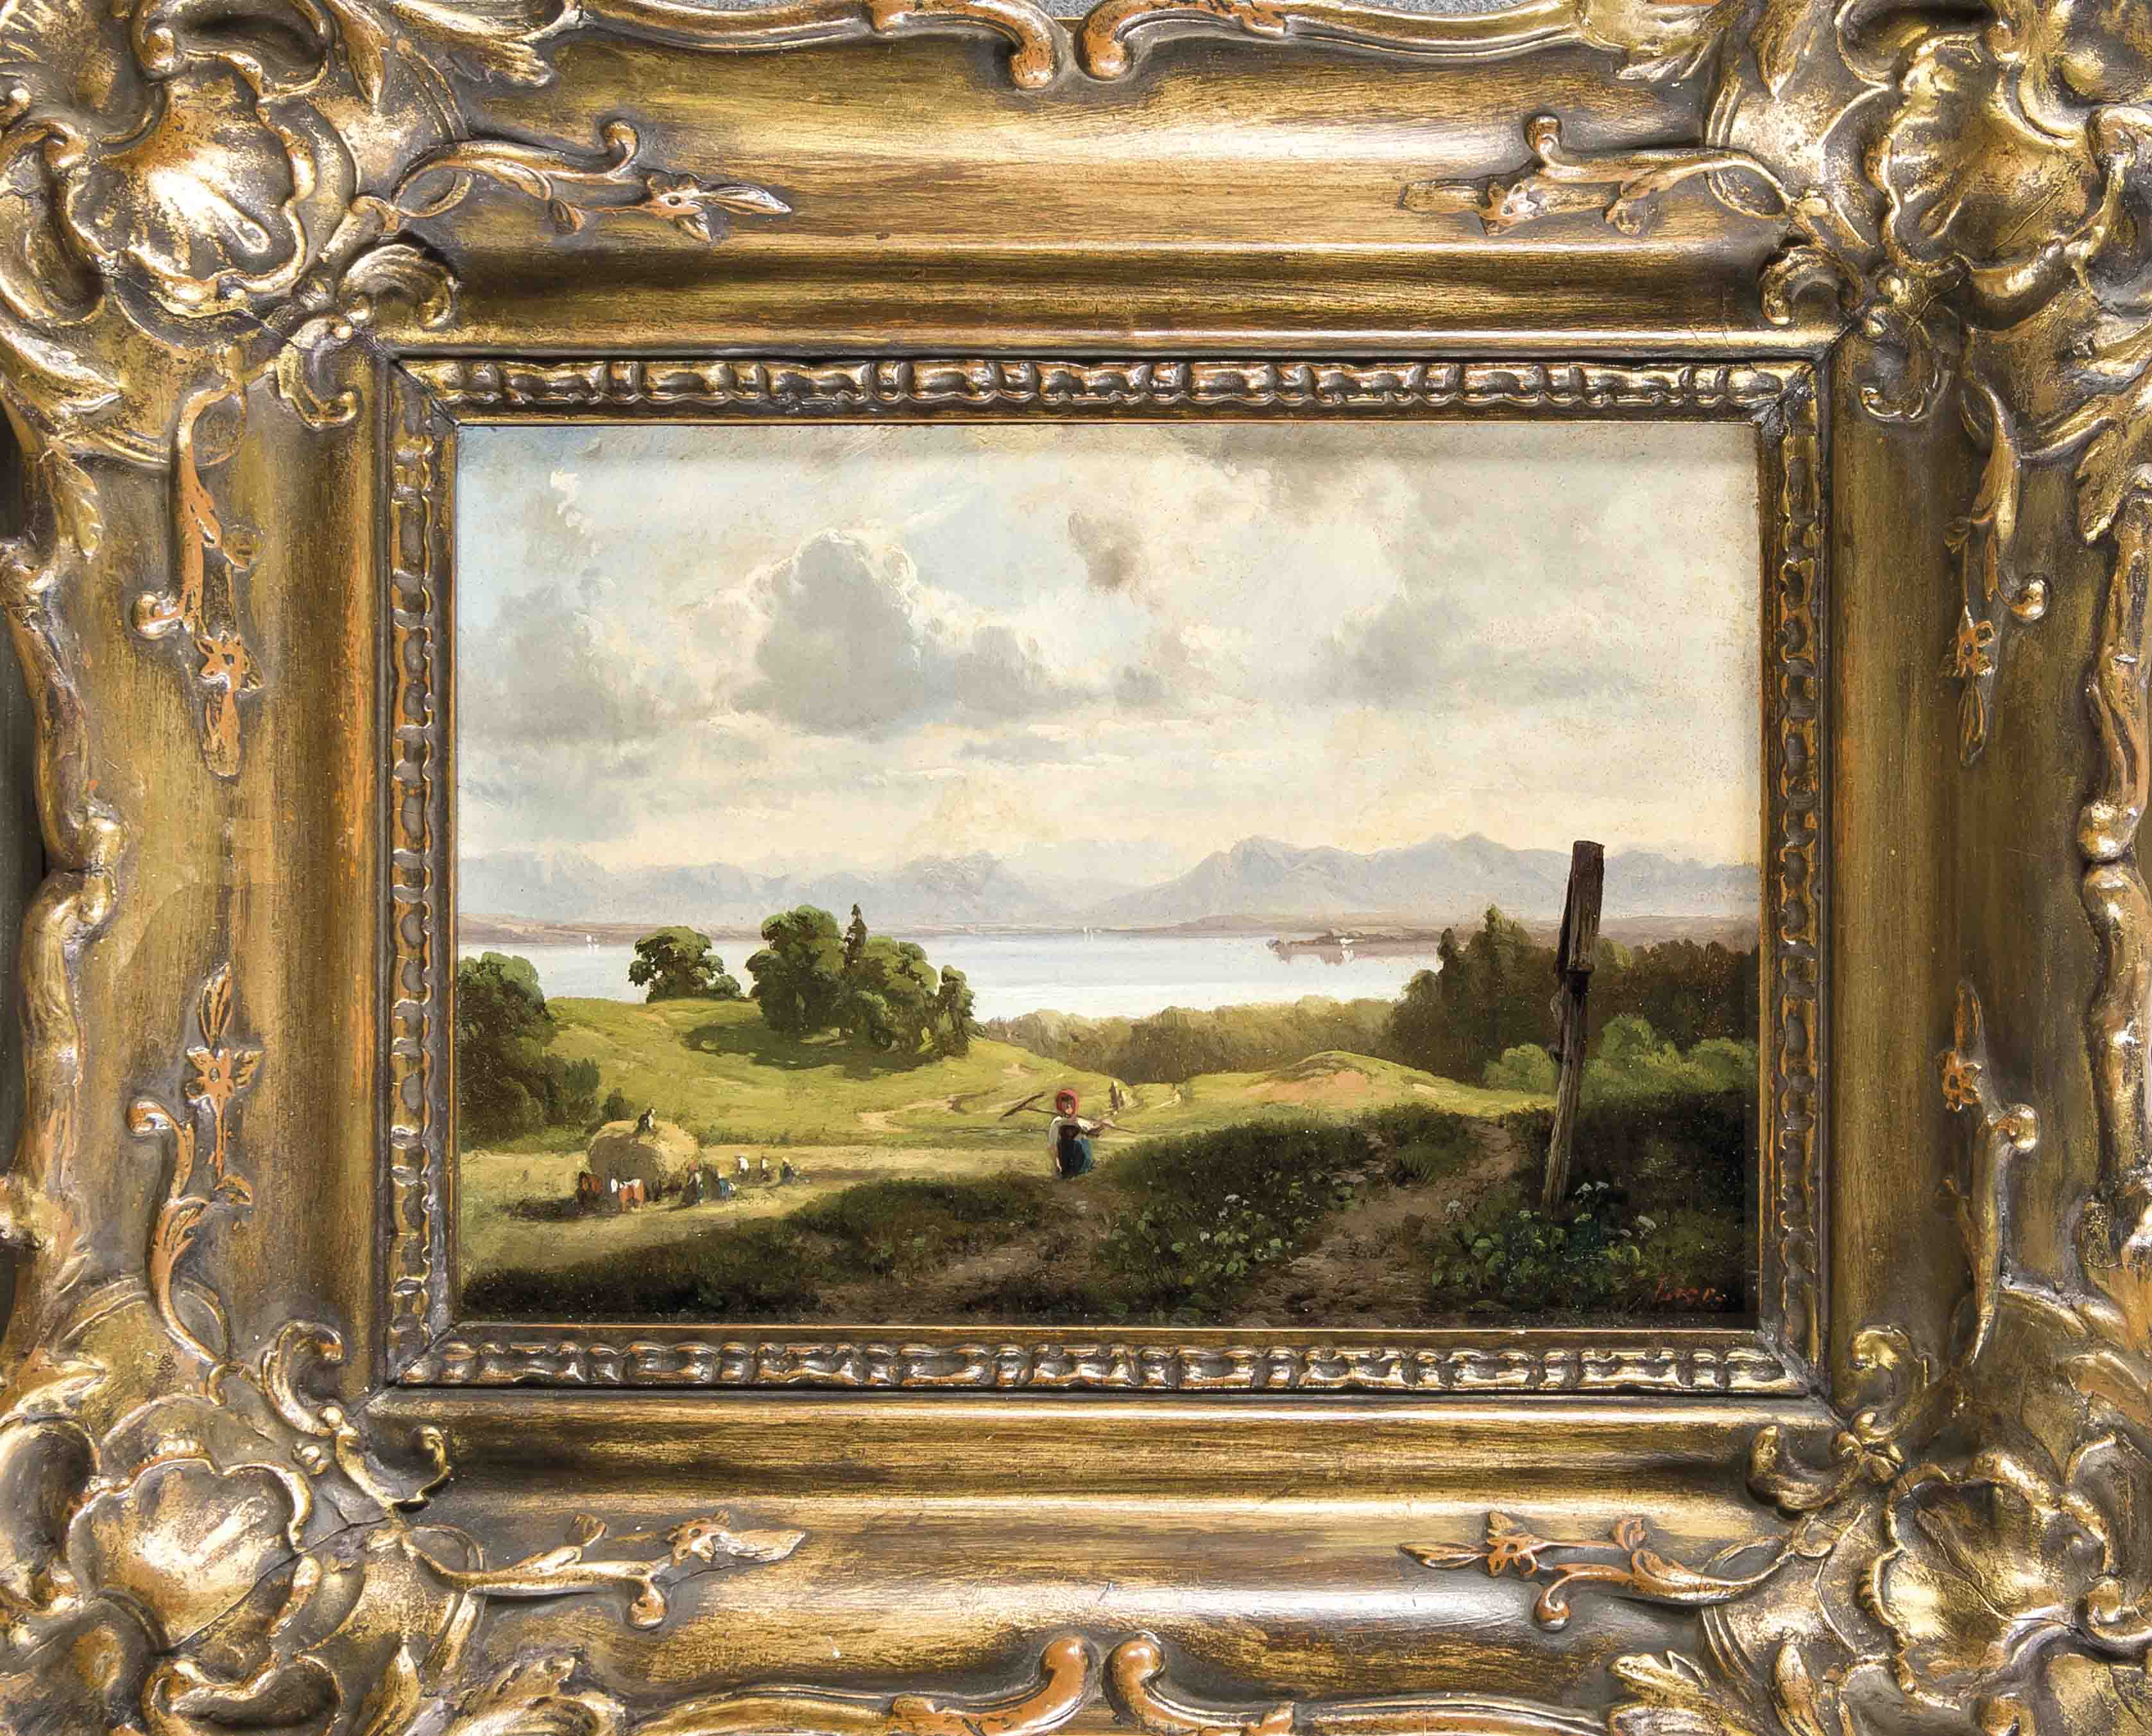 Adolf Heinrich Lier (1826-1882), dt. Landschaftsmaler, studierte bei Richard Zimmermann inMünchen,